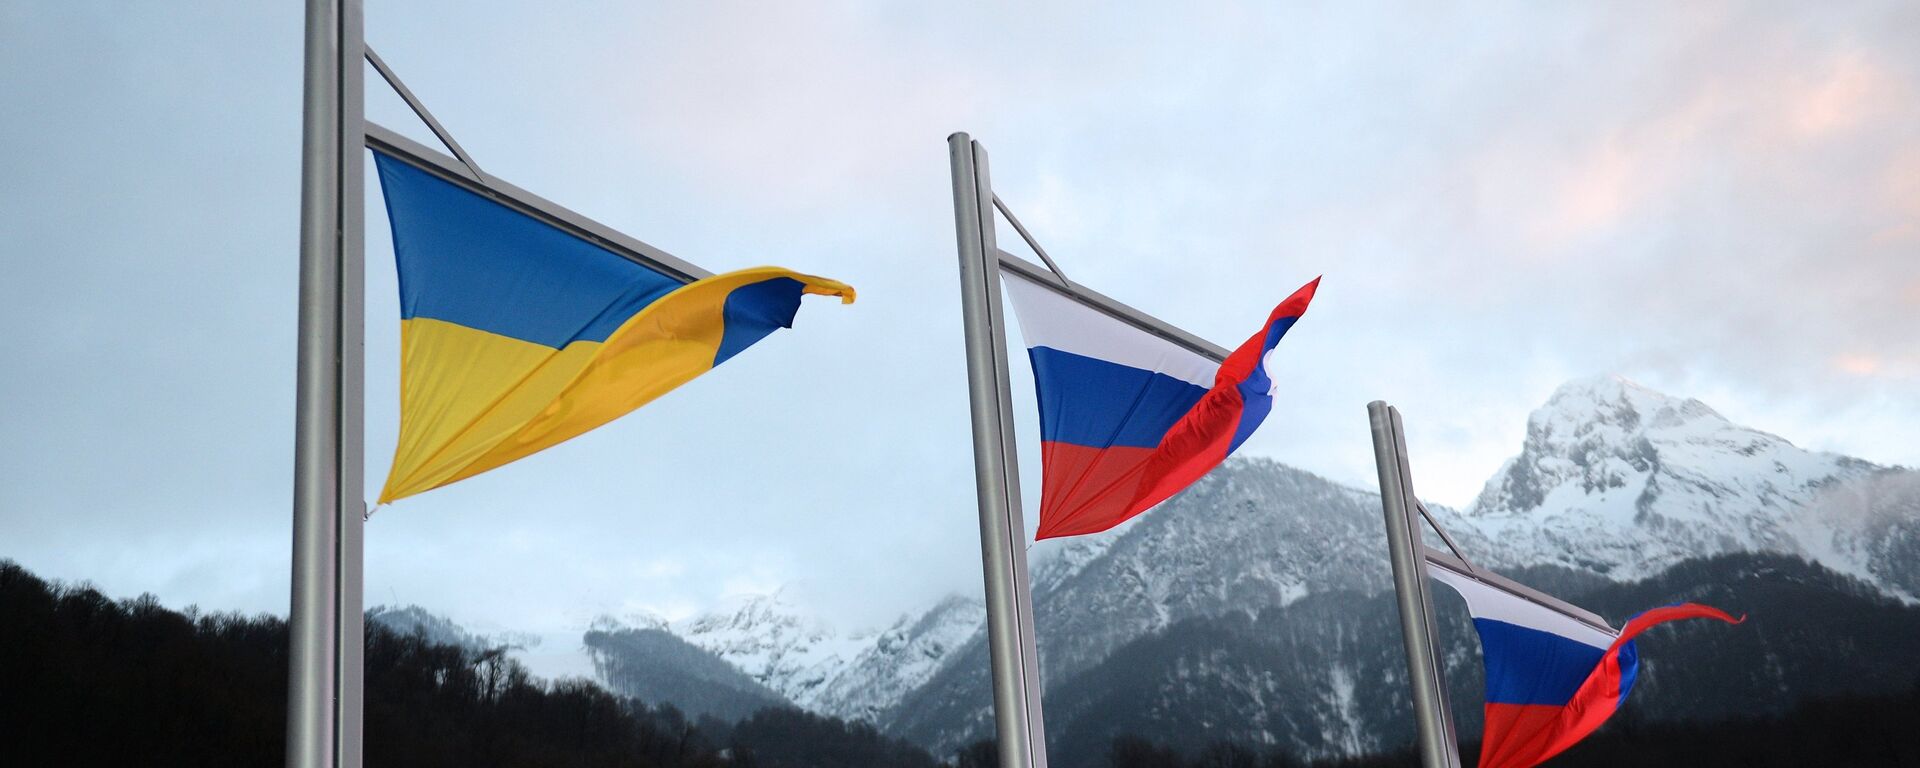 Banderas de Rusia y Ucrania - Sputnik Mundo, 1920, 07.09.2021